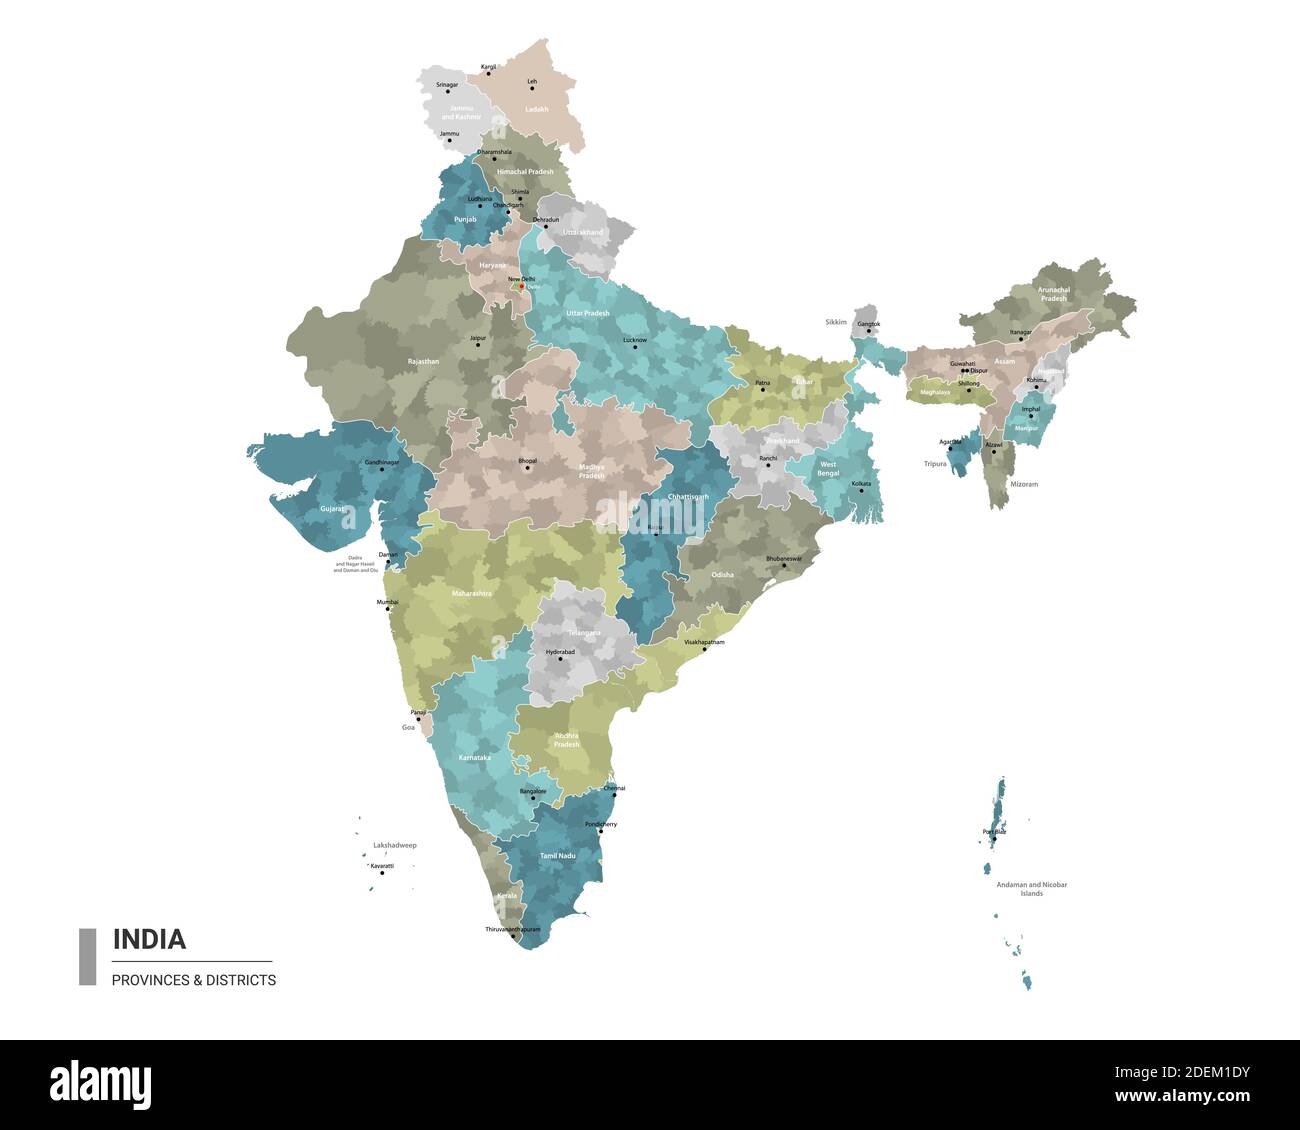 India higt Mappa dettagliata con suddivisioni. Mappa amministrativa dell'India con il nome dei distretti e delle città, colorata per stati e distretti amministrativi. Illustrazione Vettoriale